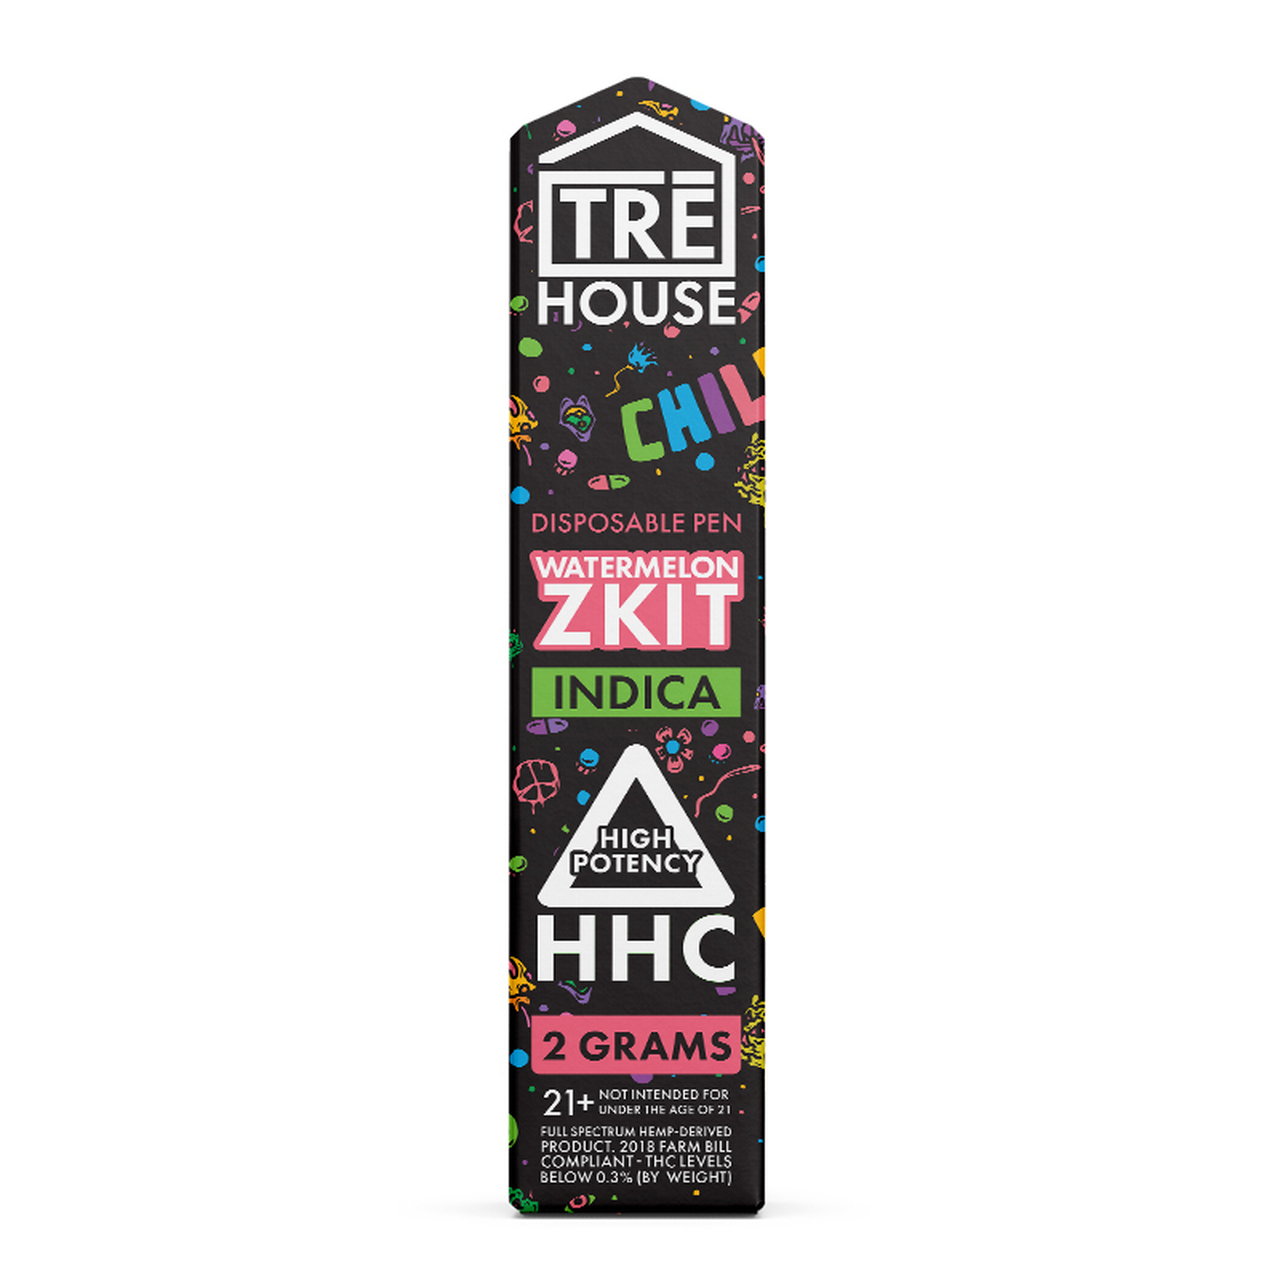 TRE House - HHC Vape - Watermelon Zkit Disposable - 2 Grams